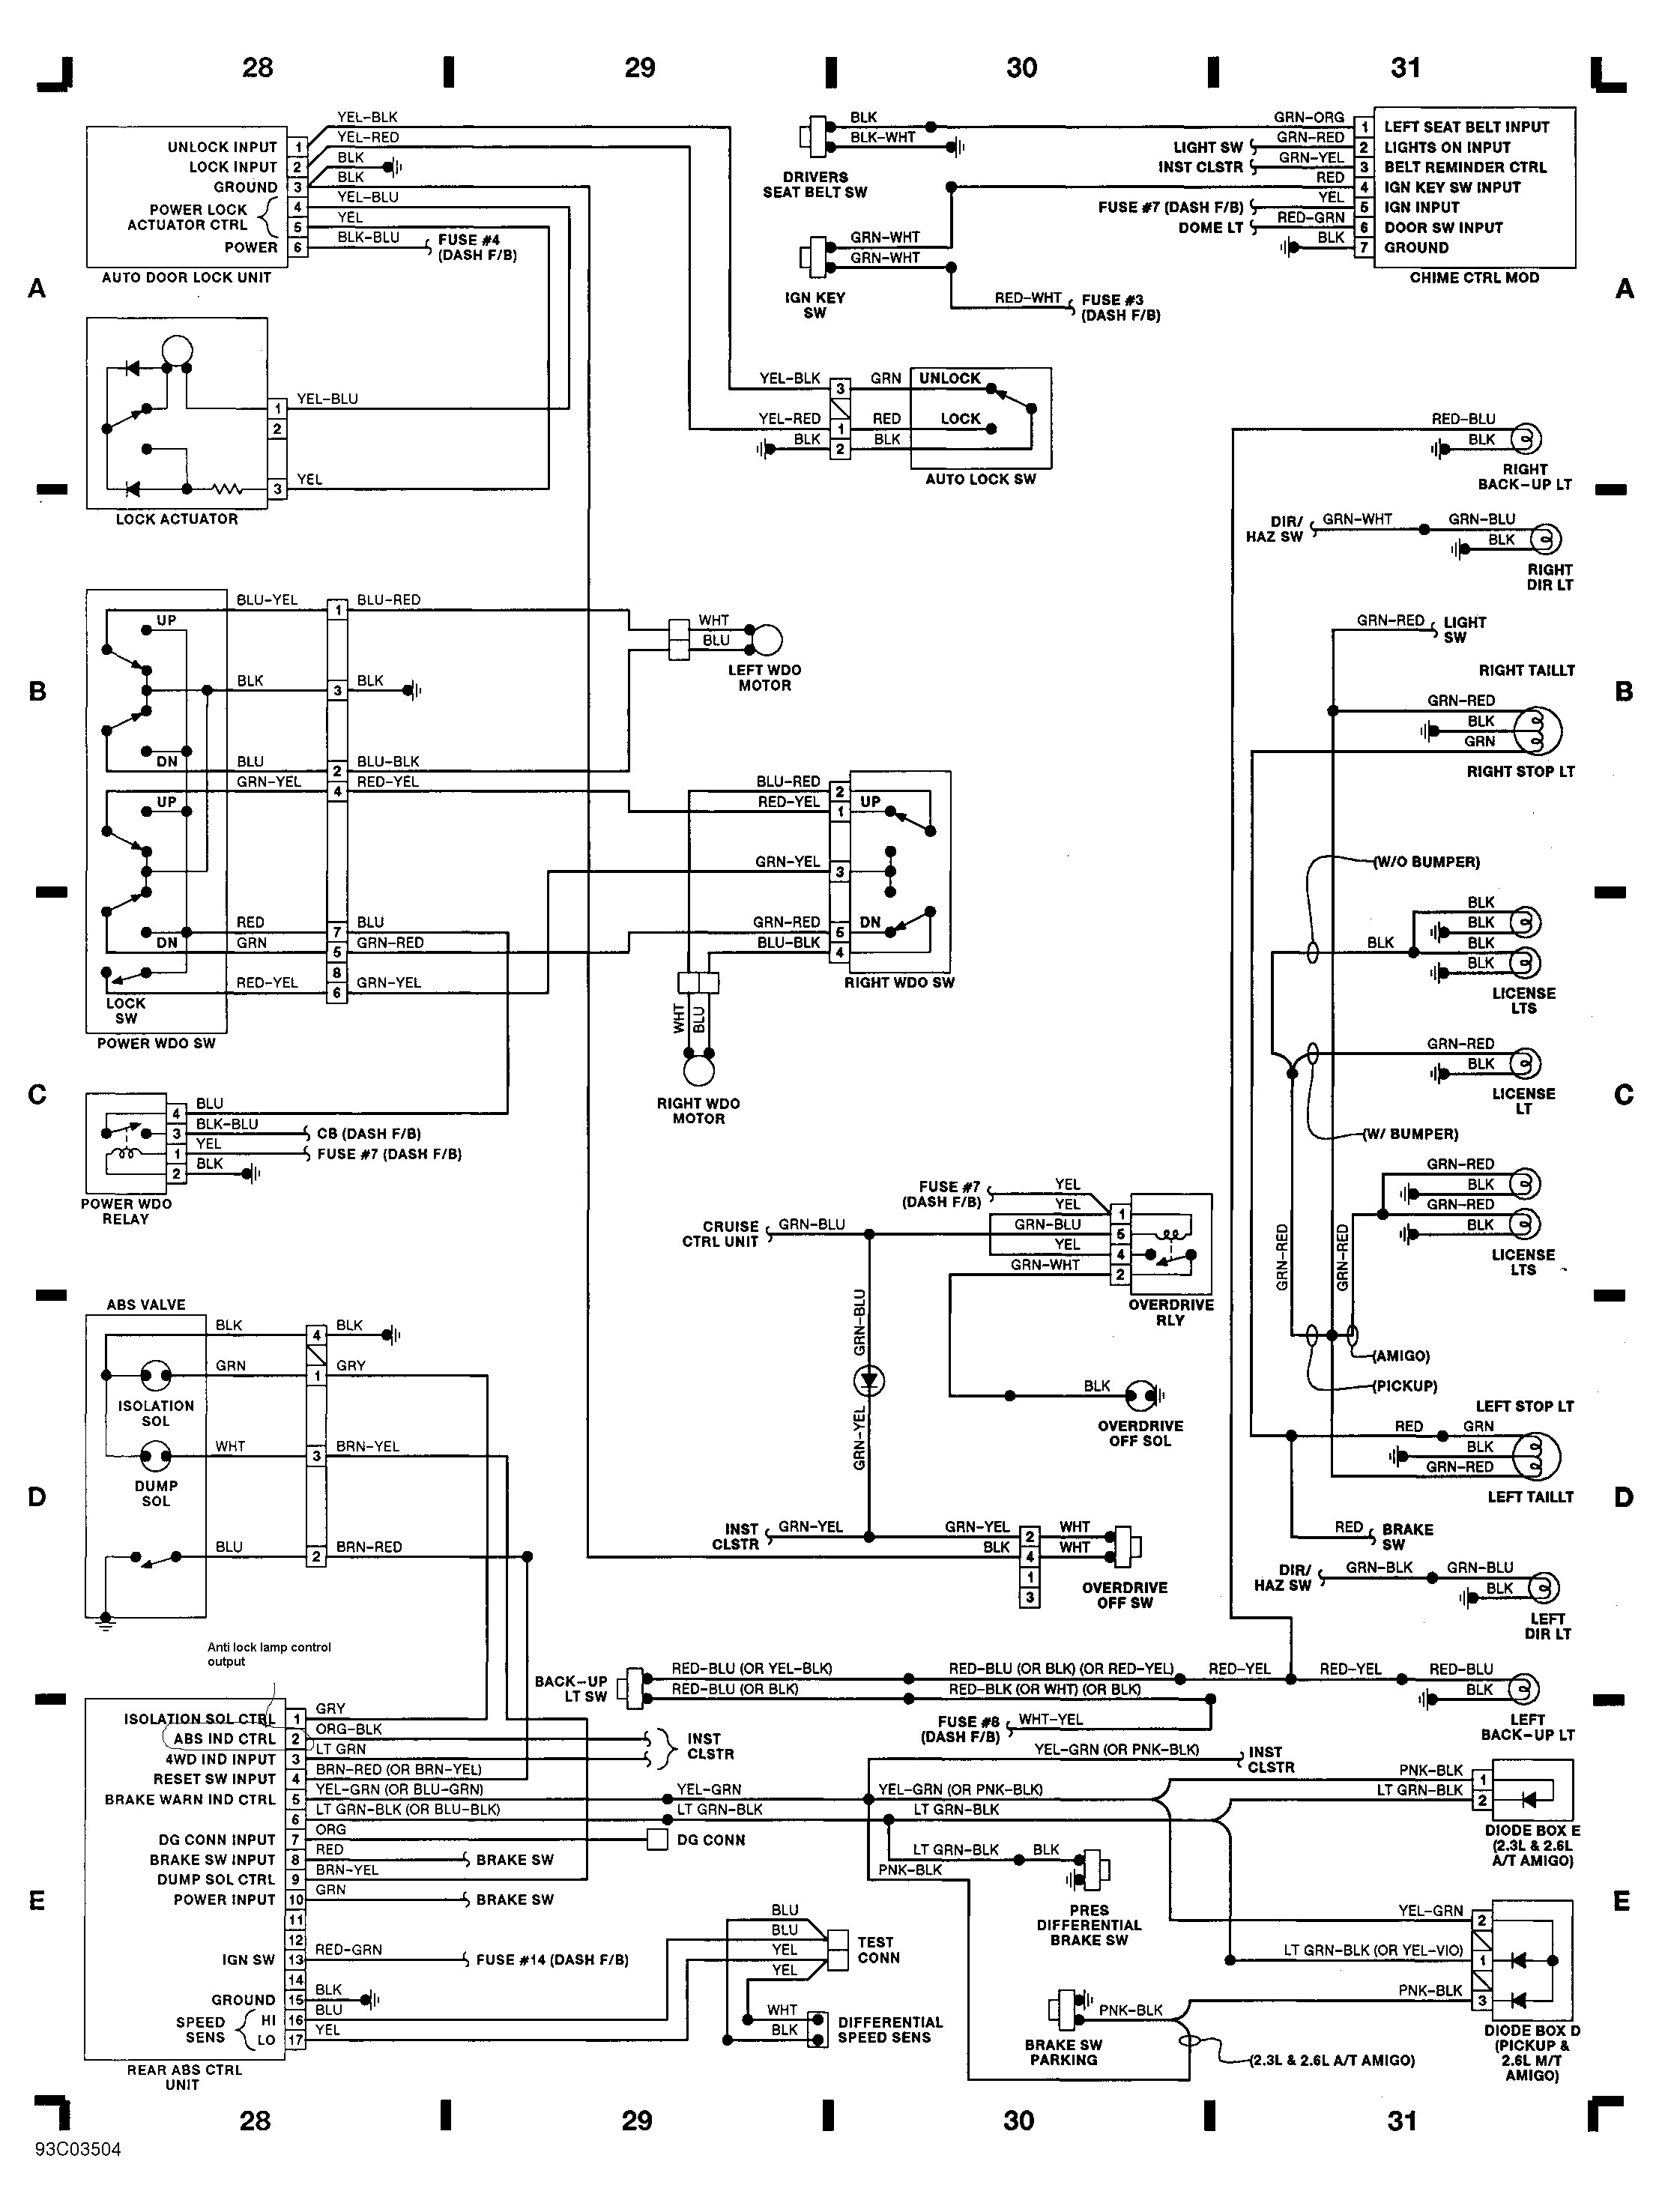 2000 isuzu Rodeo Engine Diagram isuzu Engine Schematic Wiring Diagram Inside Of 2000 isuzu Rodeo Engine Diagram